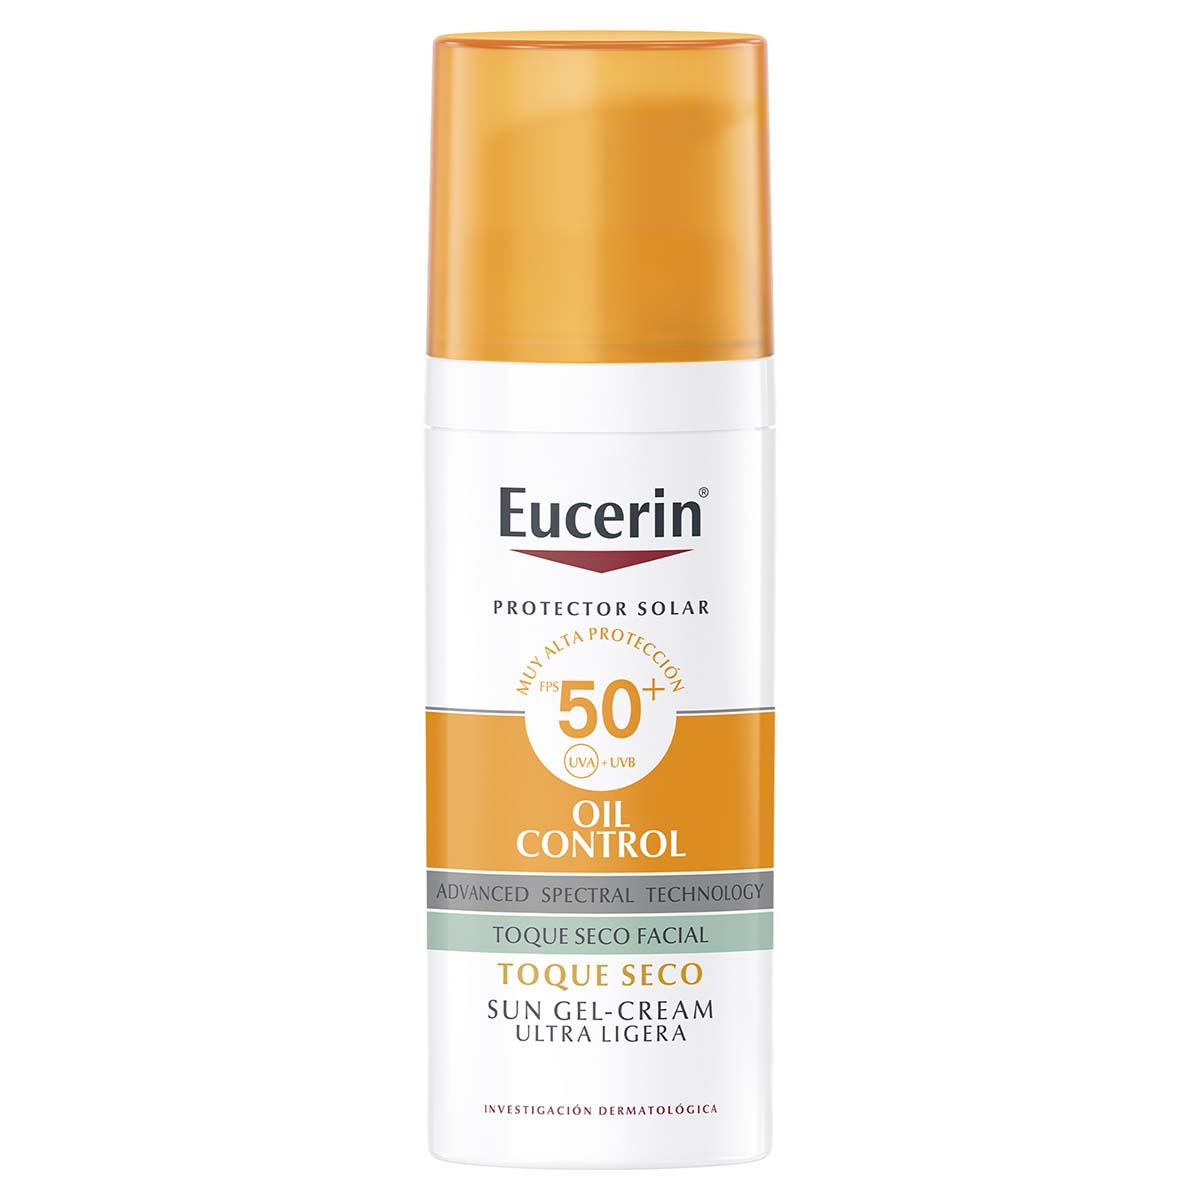 Eucerin protector solar facial matificante FPS50+ 50ml.